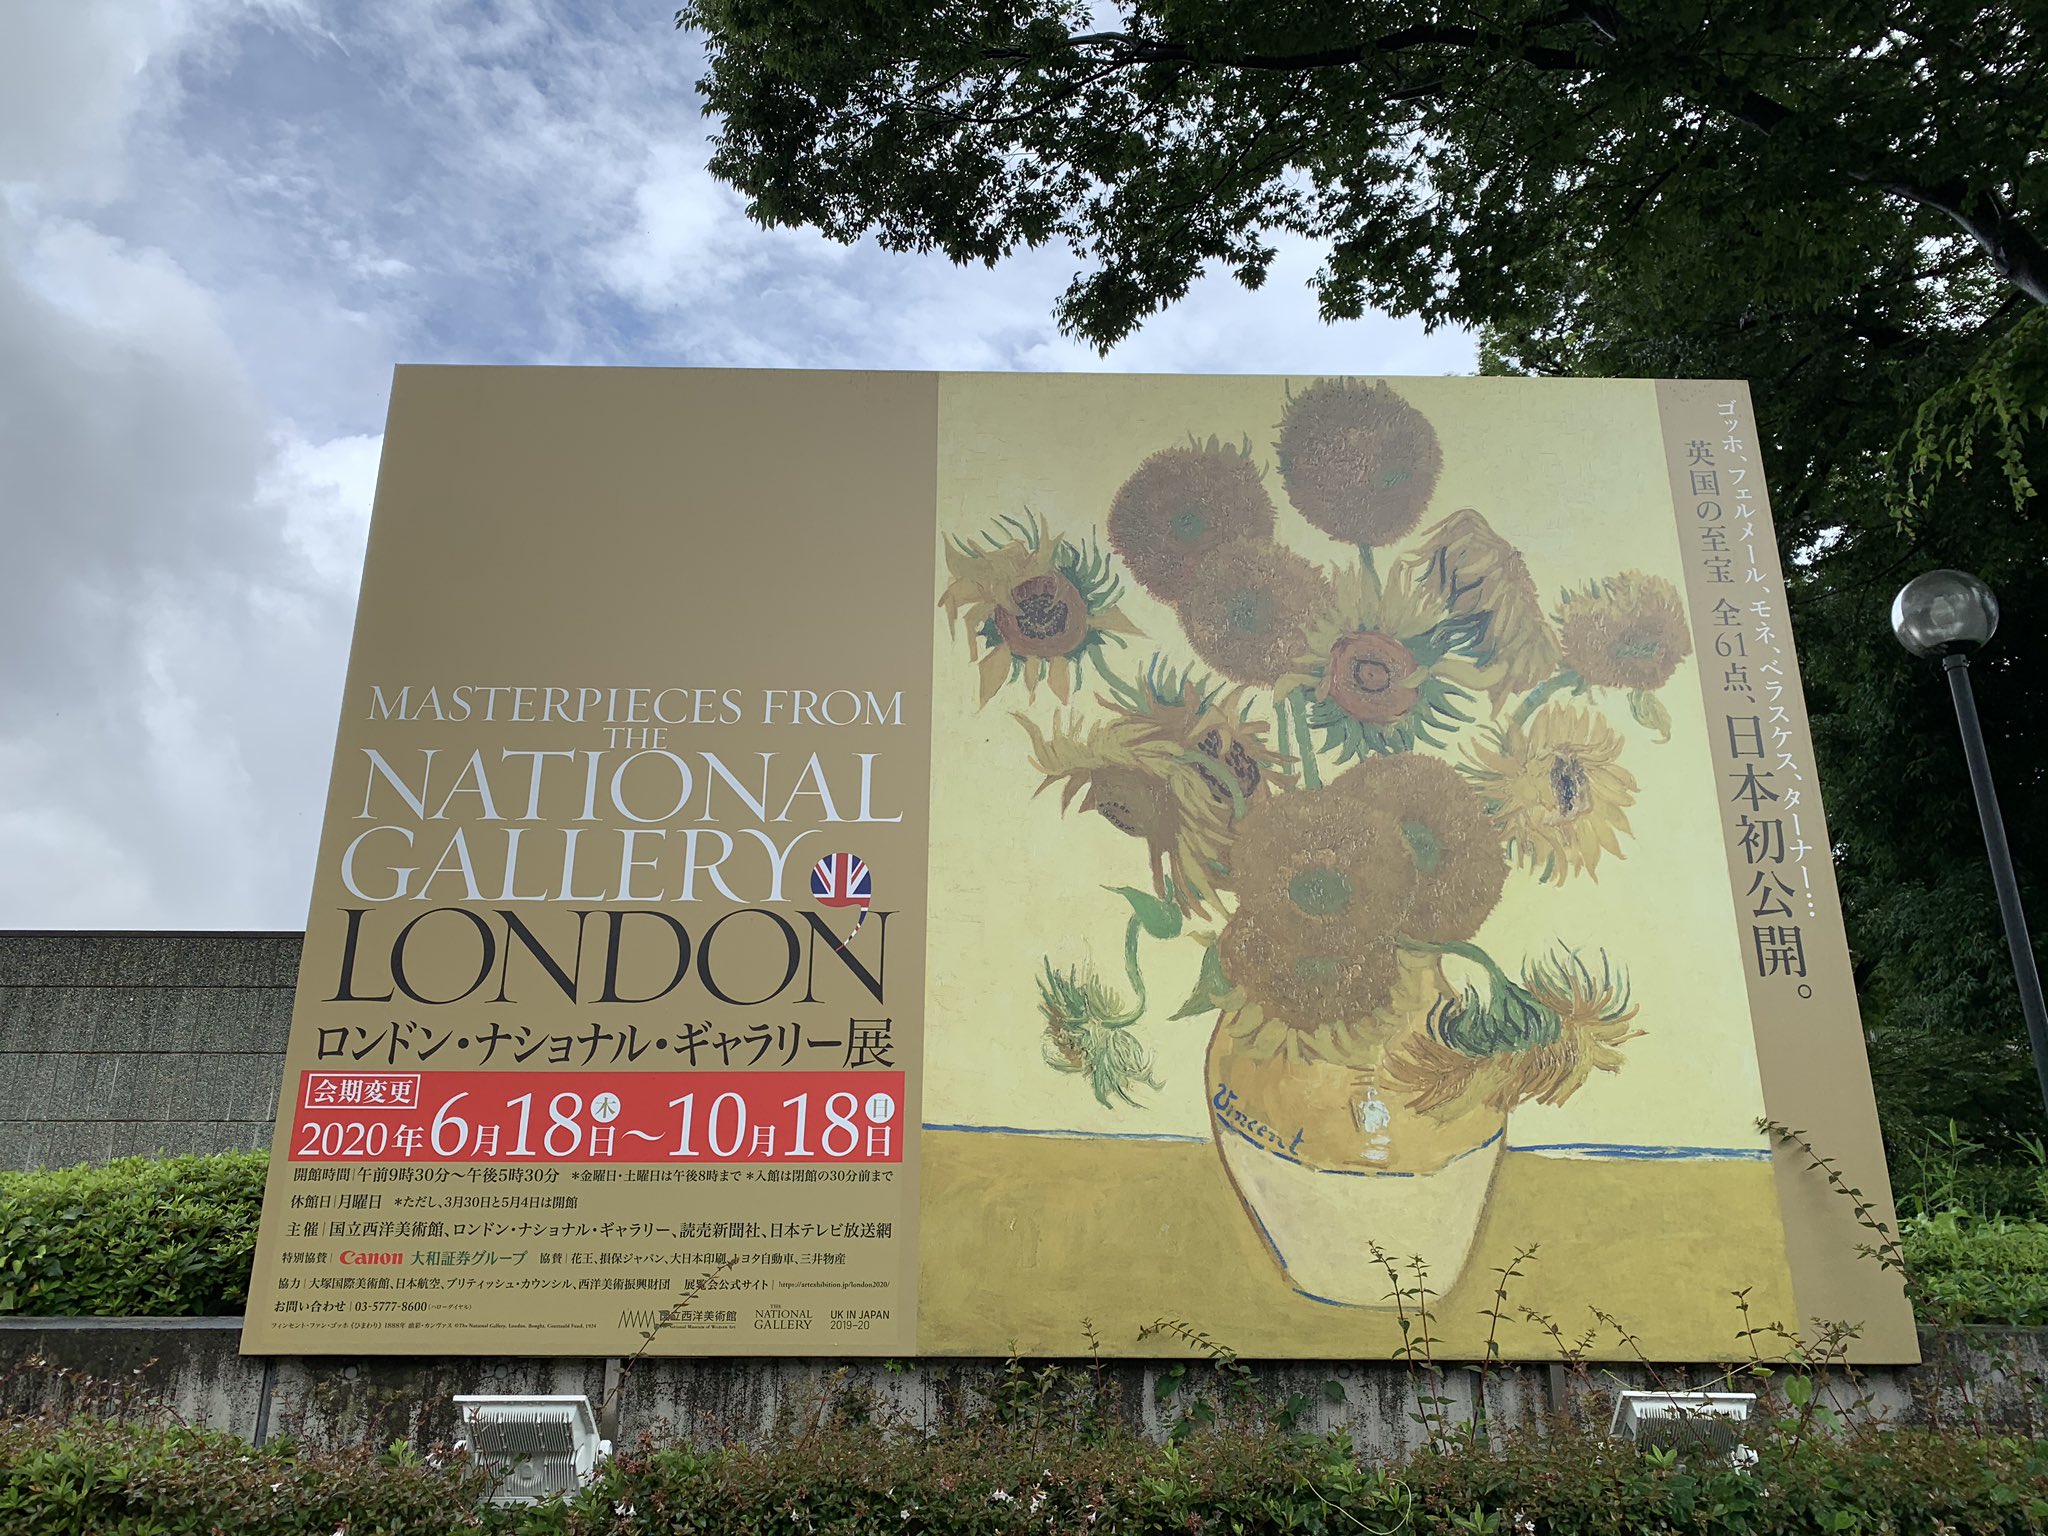 小栗まこ ロンドン ナショナル ギャラリー展 西洋美 Bura Bi Now 心待ちにしてました 全て日本初公開 ゴッホのひまわりは7枚ありますが ロンドンのは背景の黄色が美しく厚塗りの部分は観てわかりました カルロの聖エミディウスを伴う受胎告知も